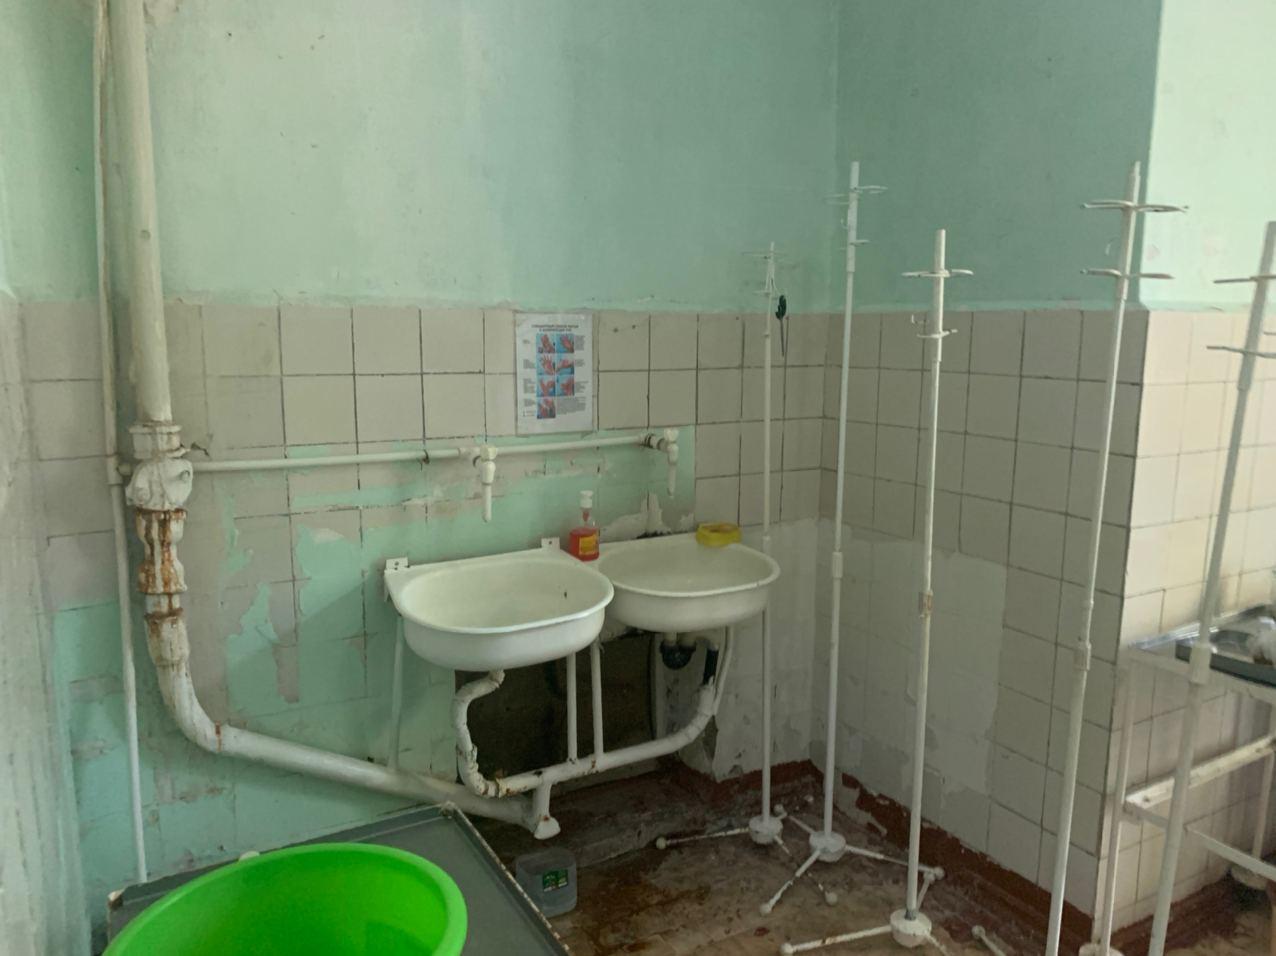 Минздрав перевел в новое здание сотрудников больницы в Янгиюле после видео о ветхом состоянии помещения